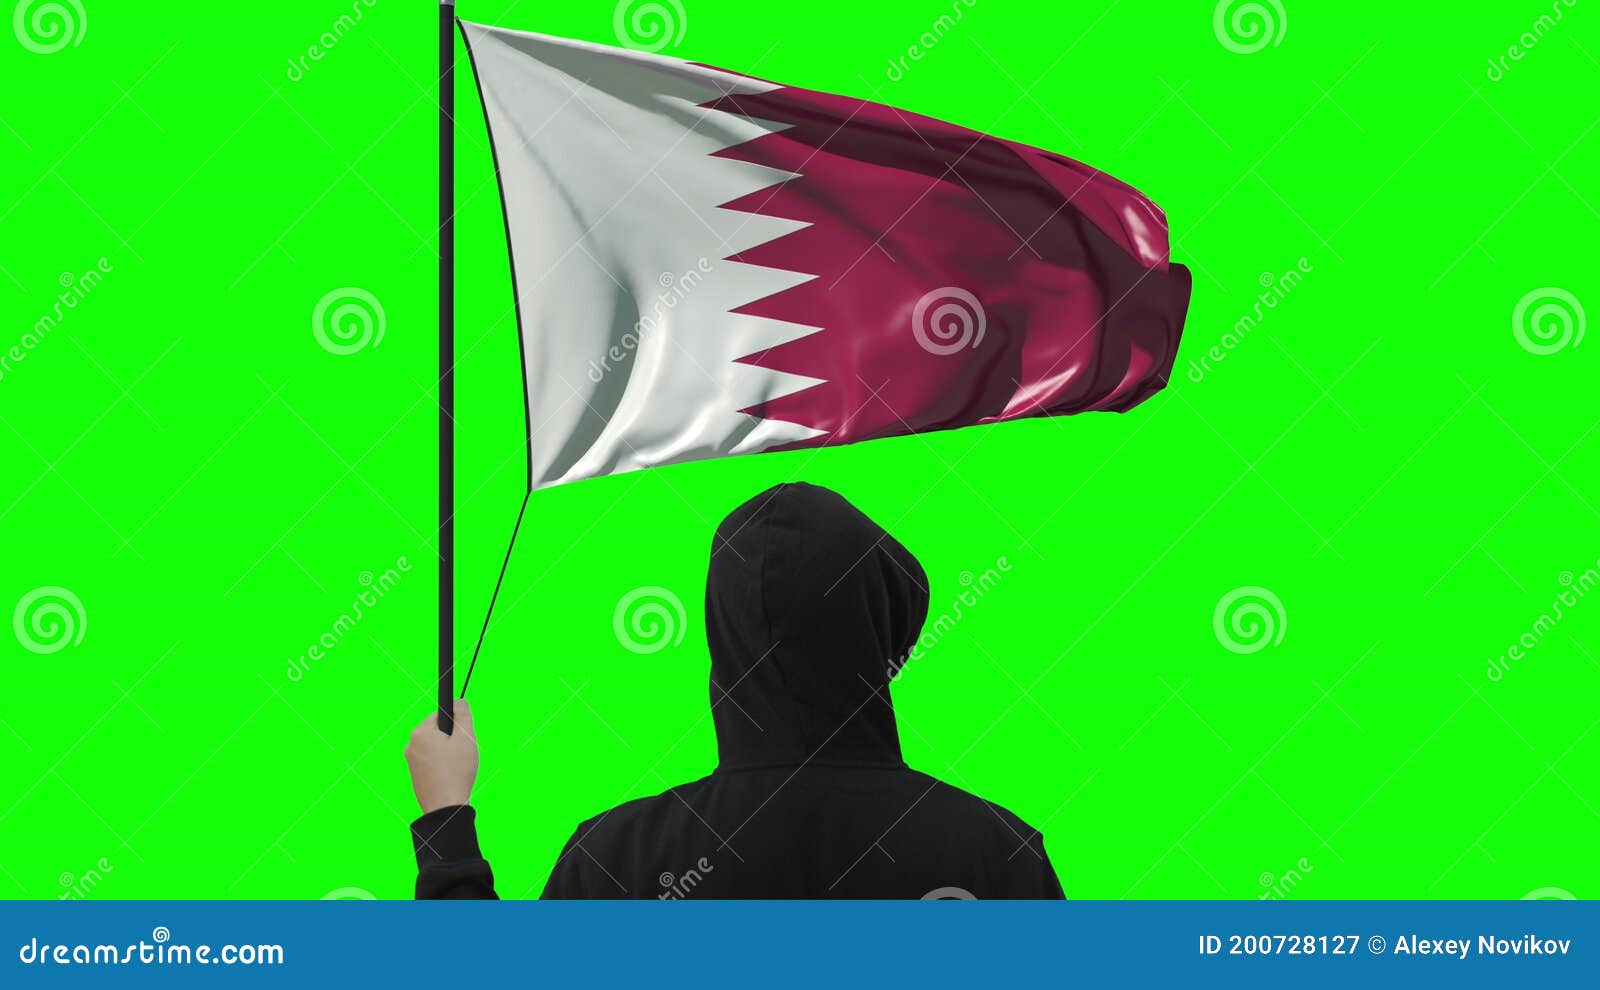 Lá cờ Qatar đơn lẻ trên nền xanh lá cây sẽ cho bạn cảm giác như mình đang đứng trước bản đồ đất nước nơi cư ngụ của hàng triệu người. Với đường viền trắng rực rỡ và ngôi sao mày râu phía trên, chúng tôi đã tạo ra một sản phẩm tuyệt đẹp cho bạn sử dụng trong bất kỳ dự án nào của mình.